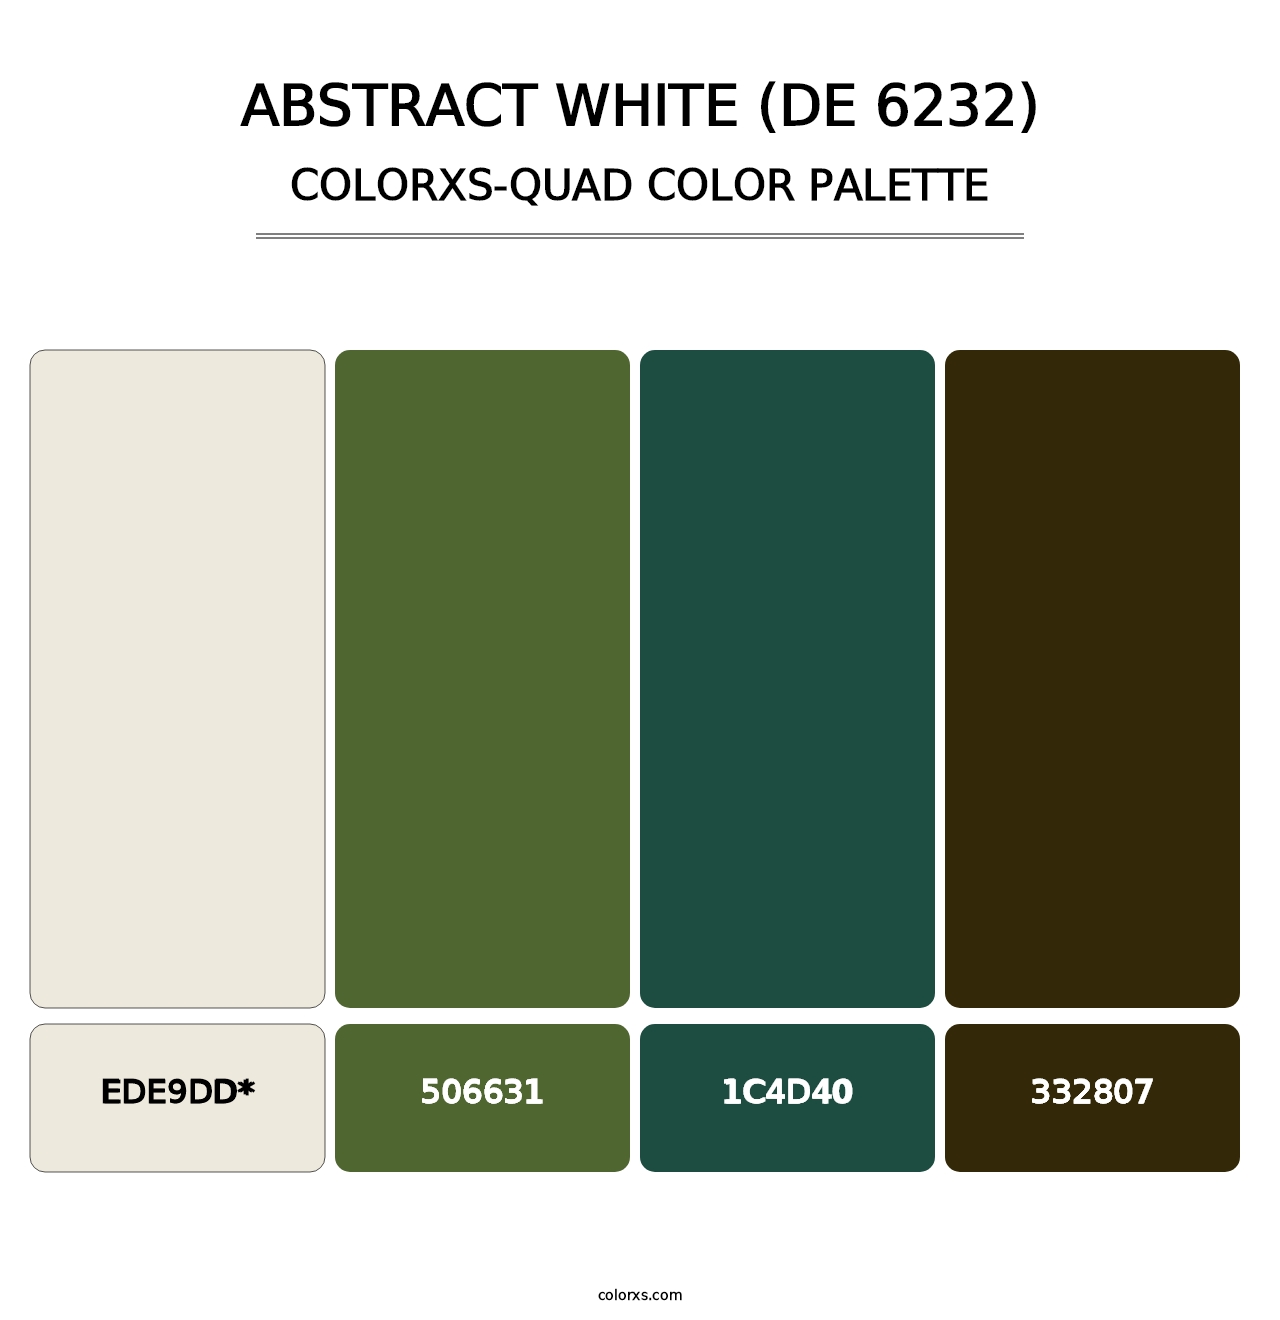 Abstract White (DE 6232) - Colorxs Quad Palette